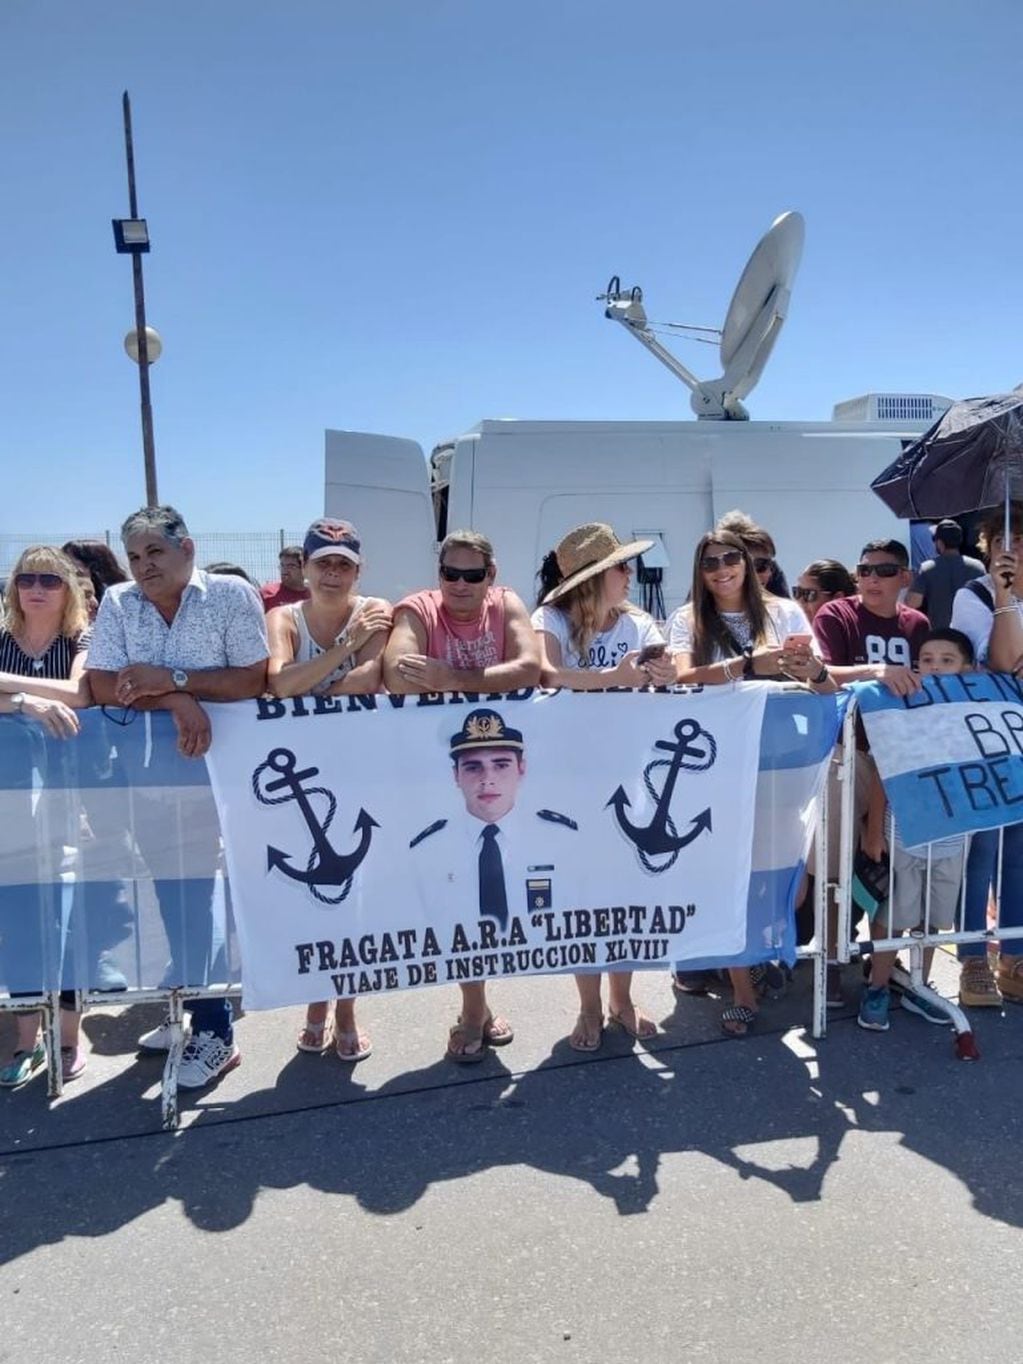 La Fragata Libertad llegó a Mar del Plata y Rossi encabeza acto de bienvenida